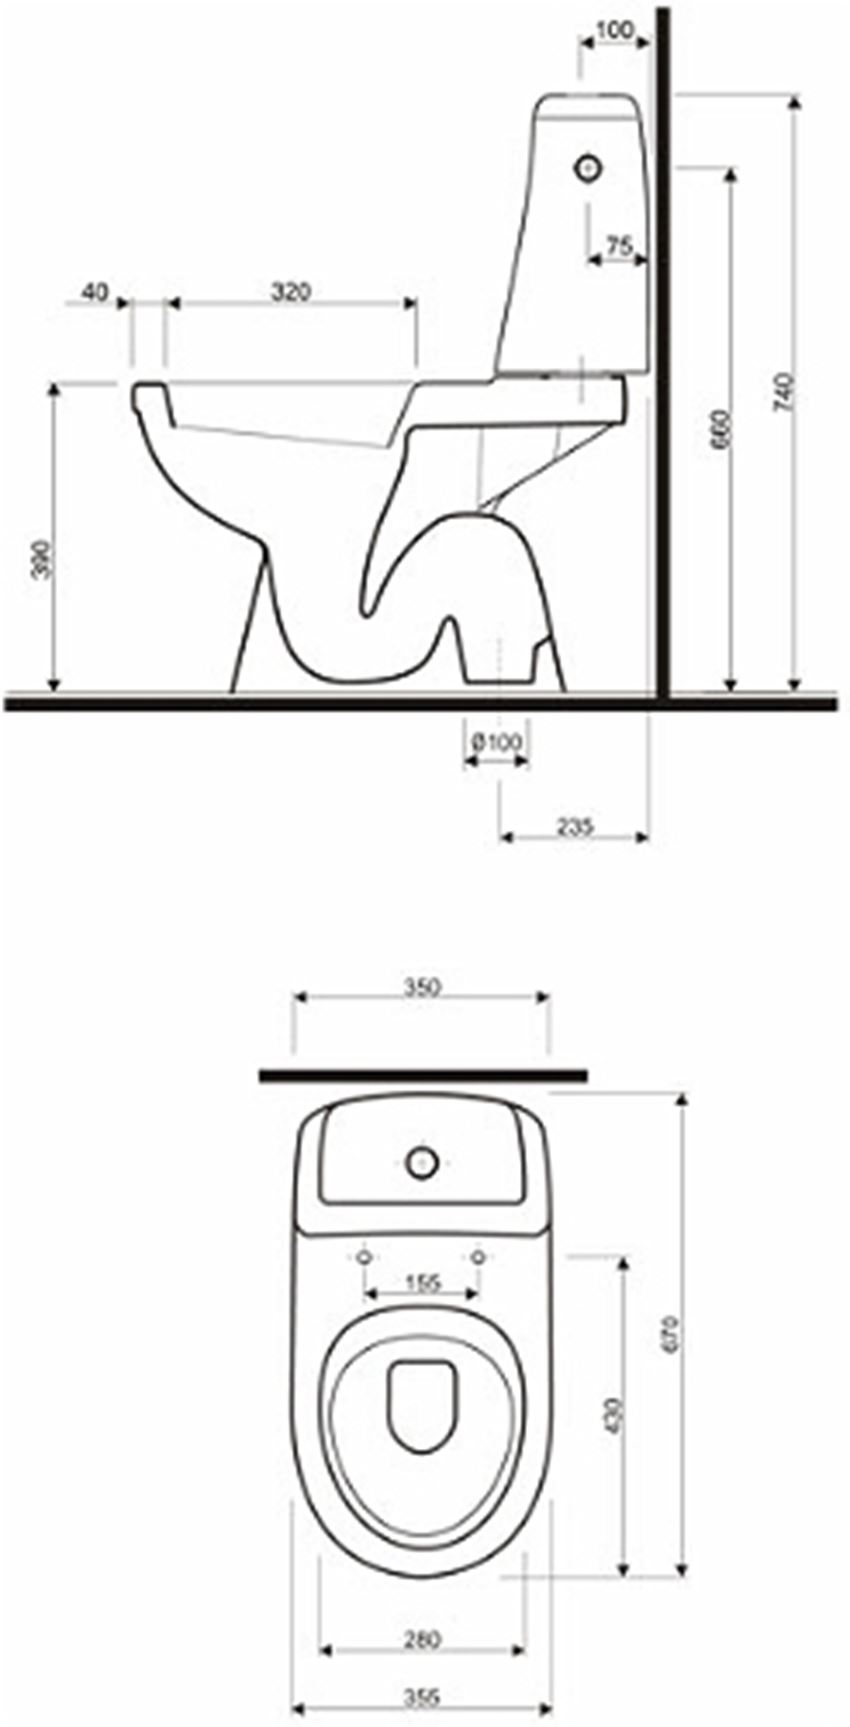 Zestaw WC kompakt odpływ pionowy Koło Solo rysunek techniczny